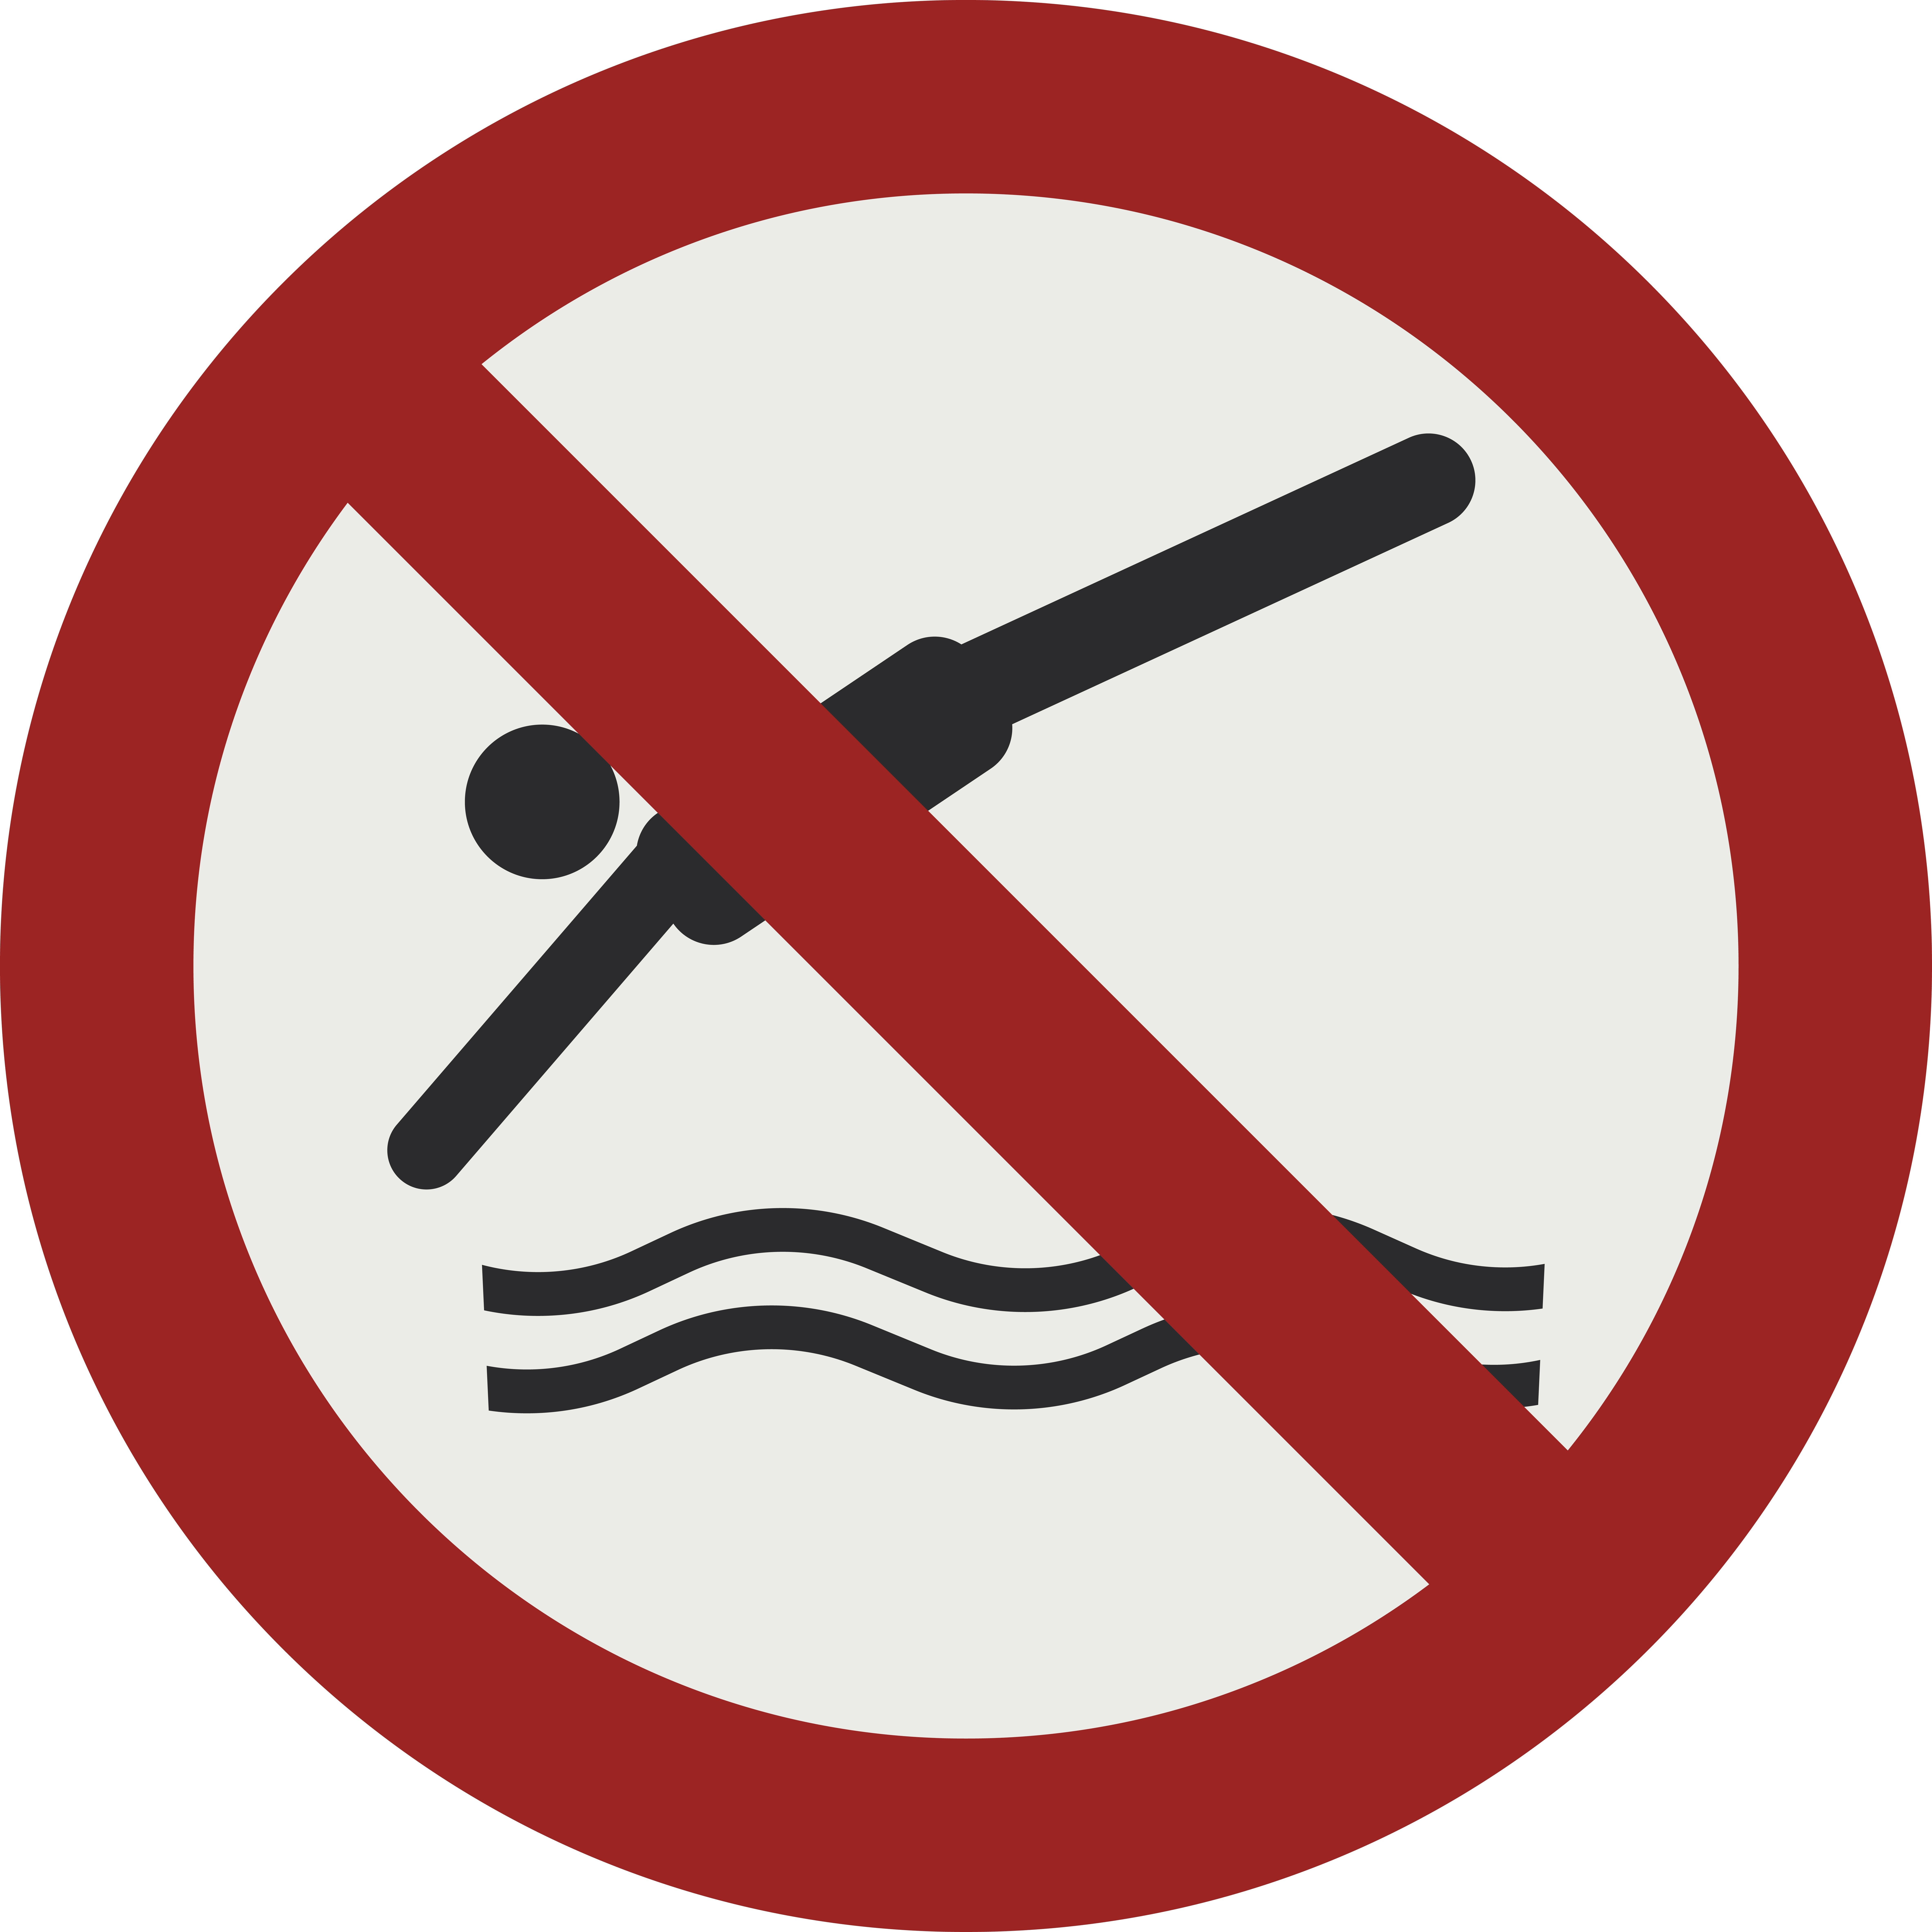 Ein Schild mit einem Schwimmer der ins Wasser springt, rot durchgestrichen. Das bedeutet Baden verboten.